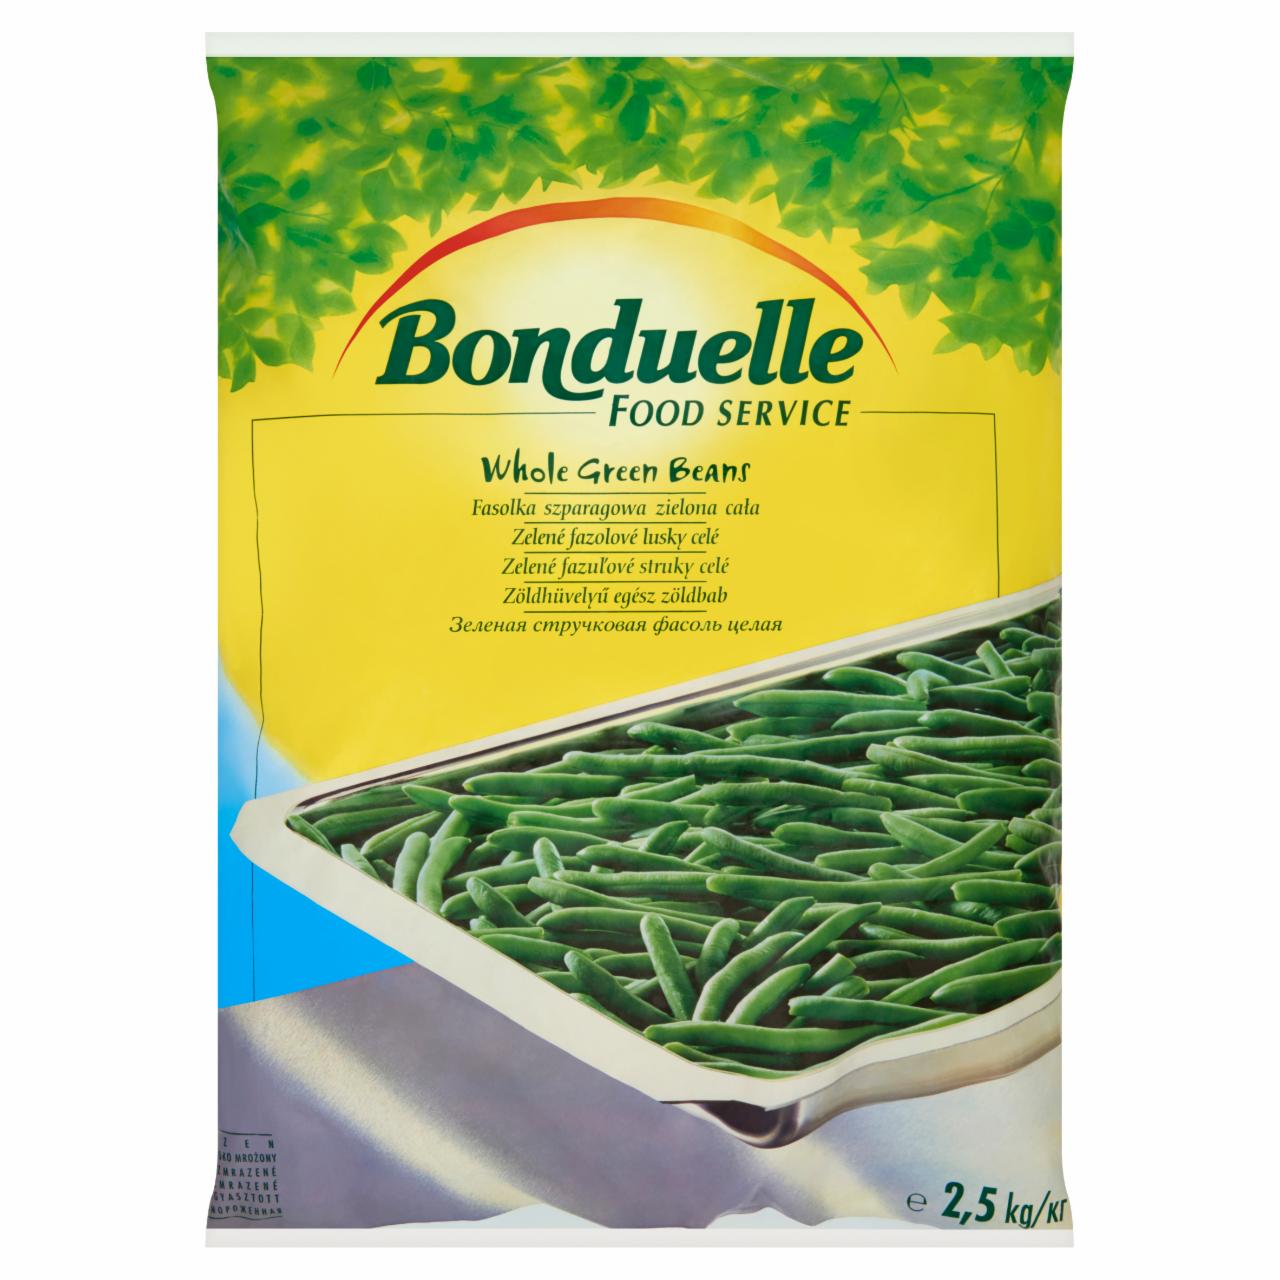 Képek - Bonduelle Food Service gyorsfagyasztott zöldhüvelyű egész zöldbab 2,5 kg